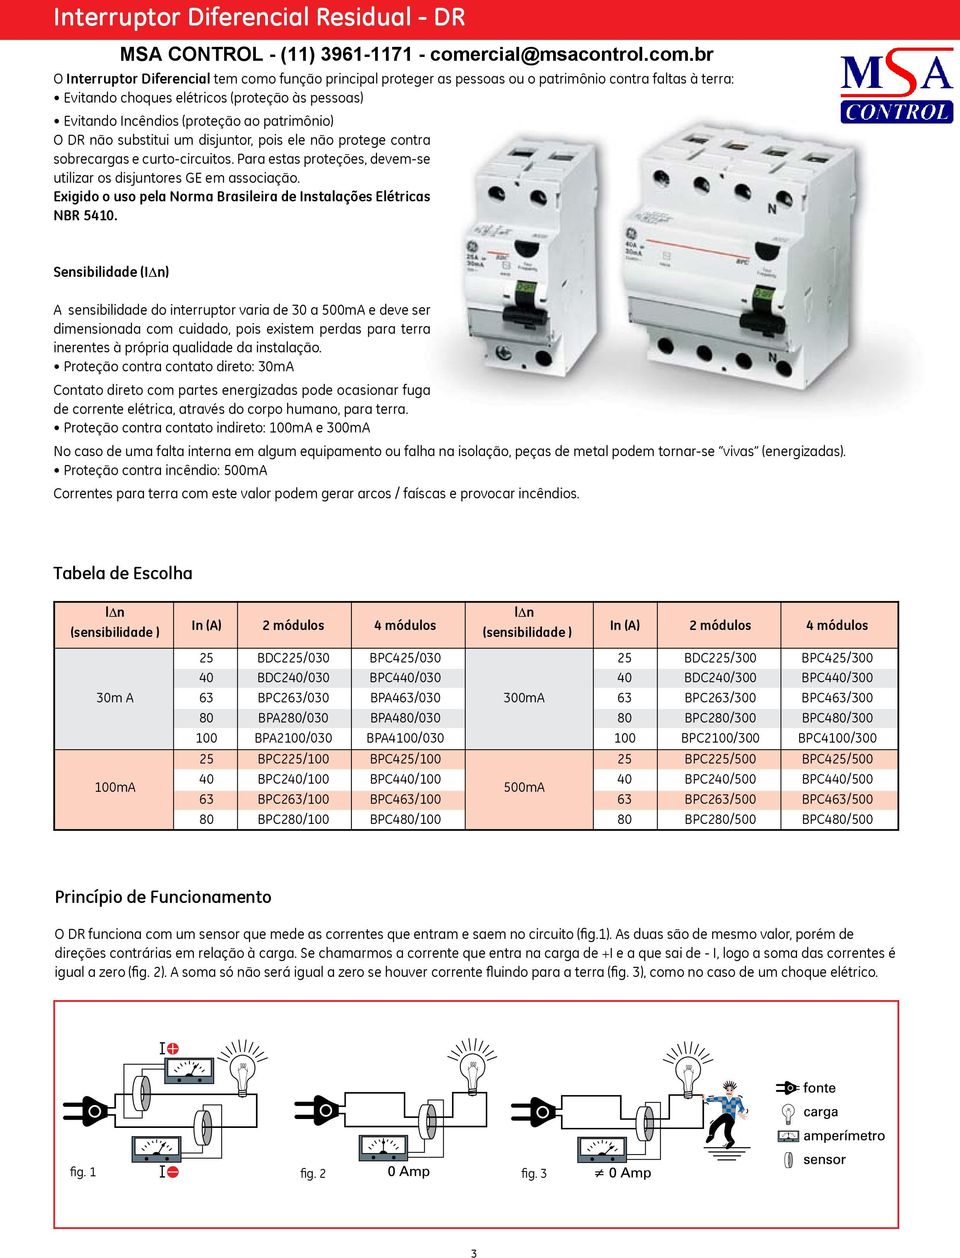 Para estas proteções, devem-se utilizar os disjuntores GE em associação. Exigido o uso pela Norma Brasileira de Instalações Elétricas NBR 5410.